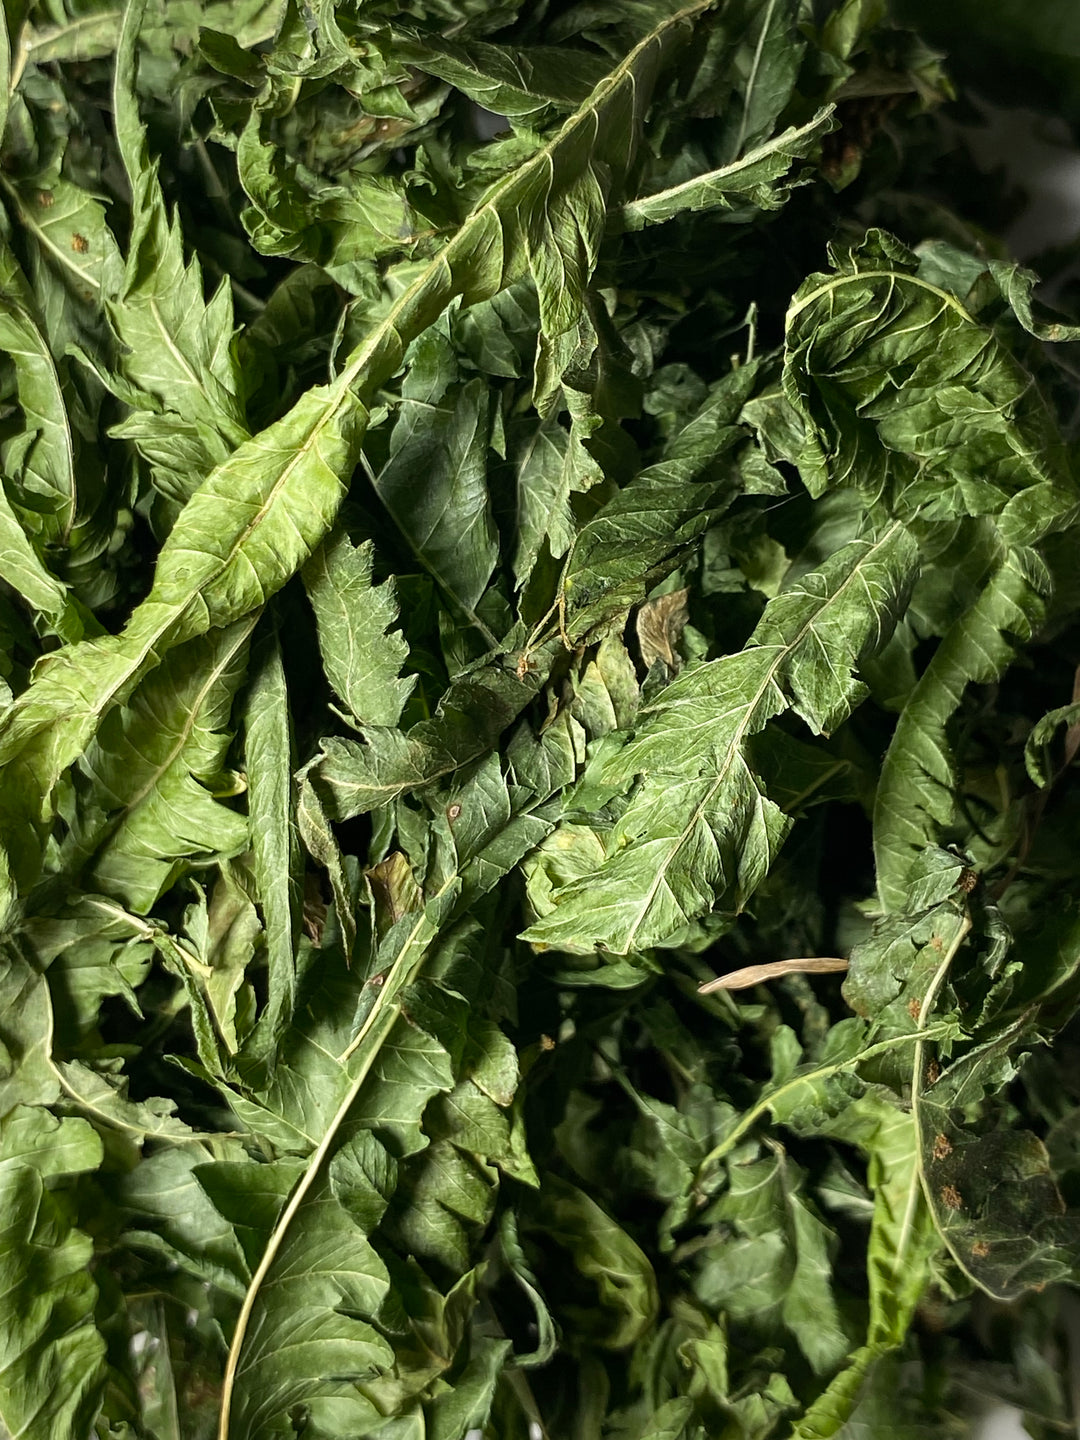 Wildcrafted Kalawalla Fern (Polypodium leucotomos), 100% Natural calaguala Herb -1 oz / 28g